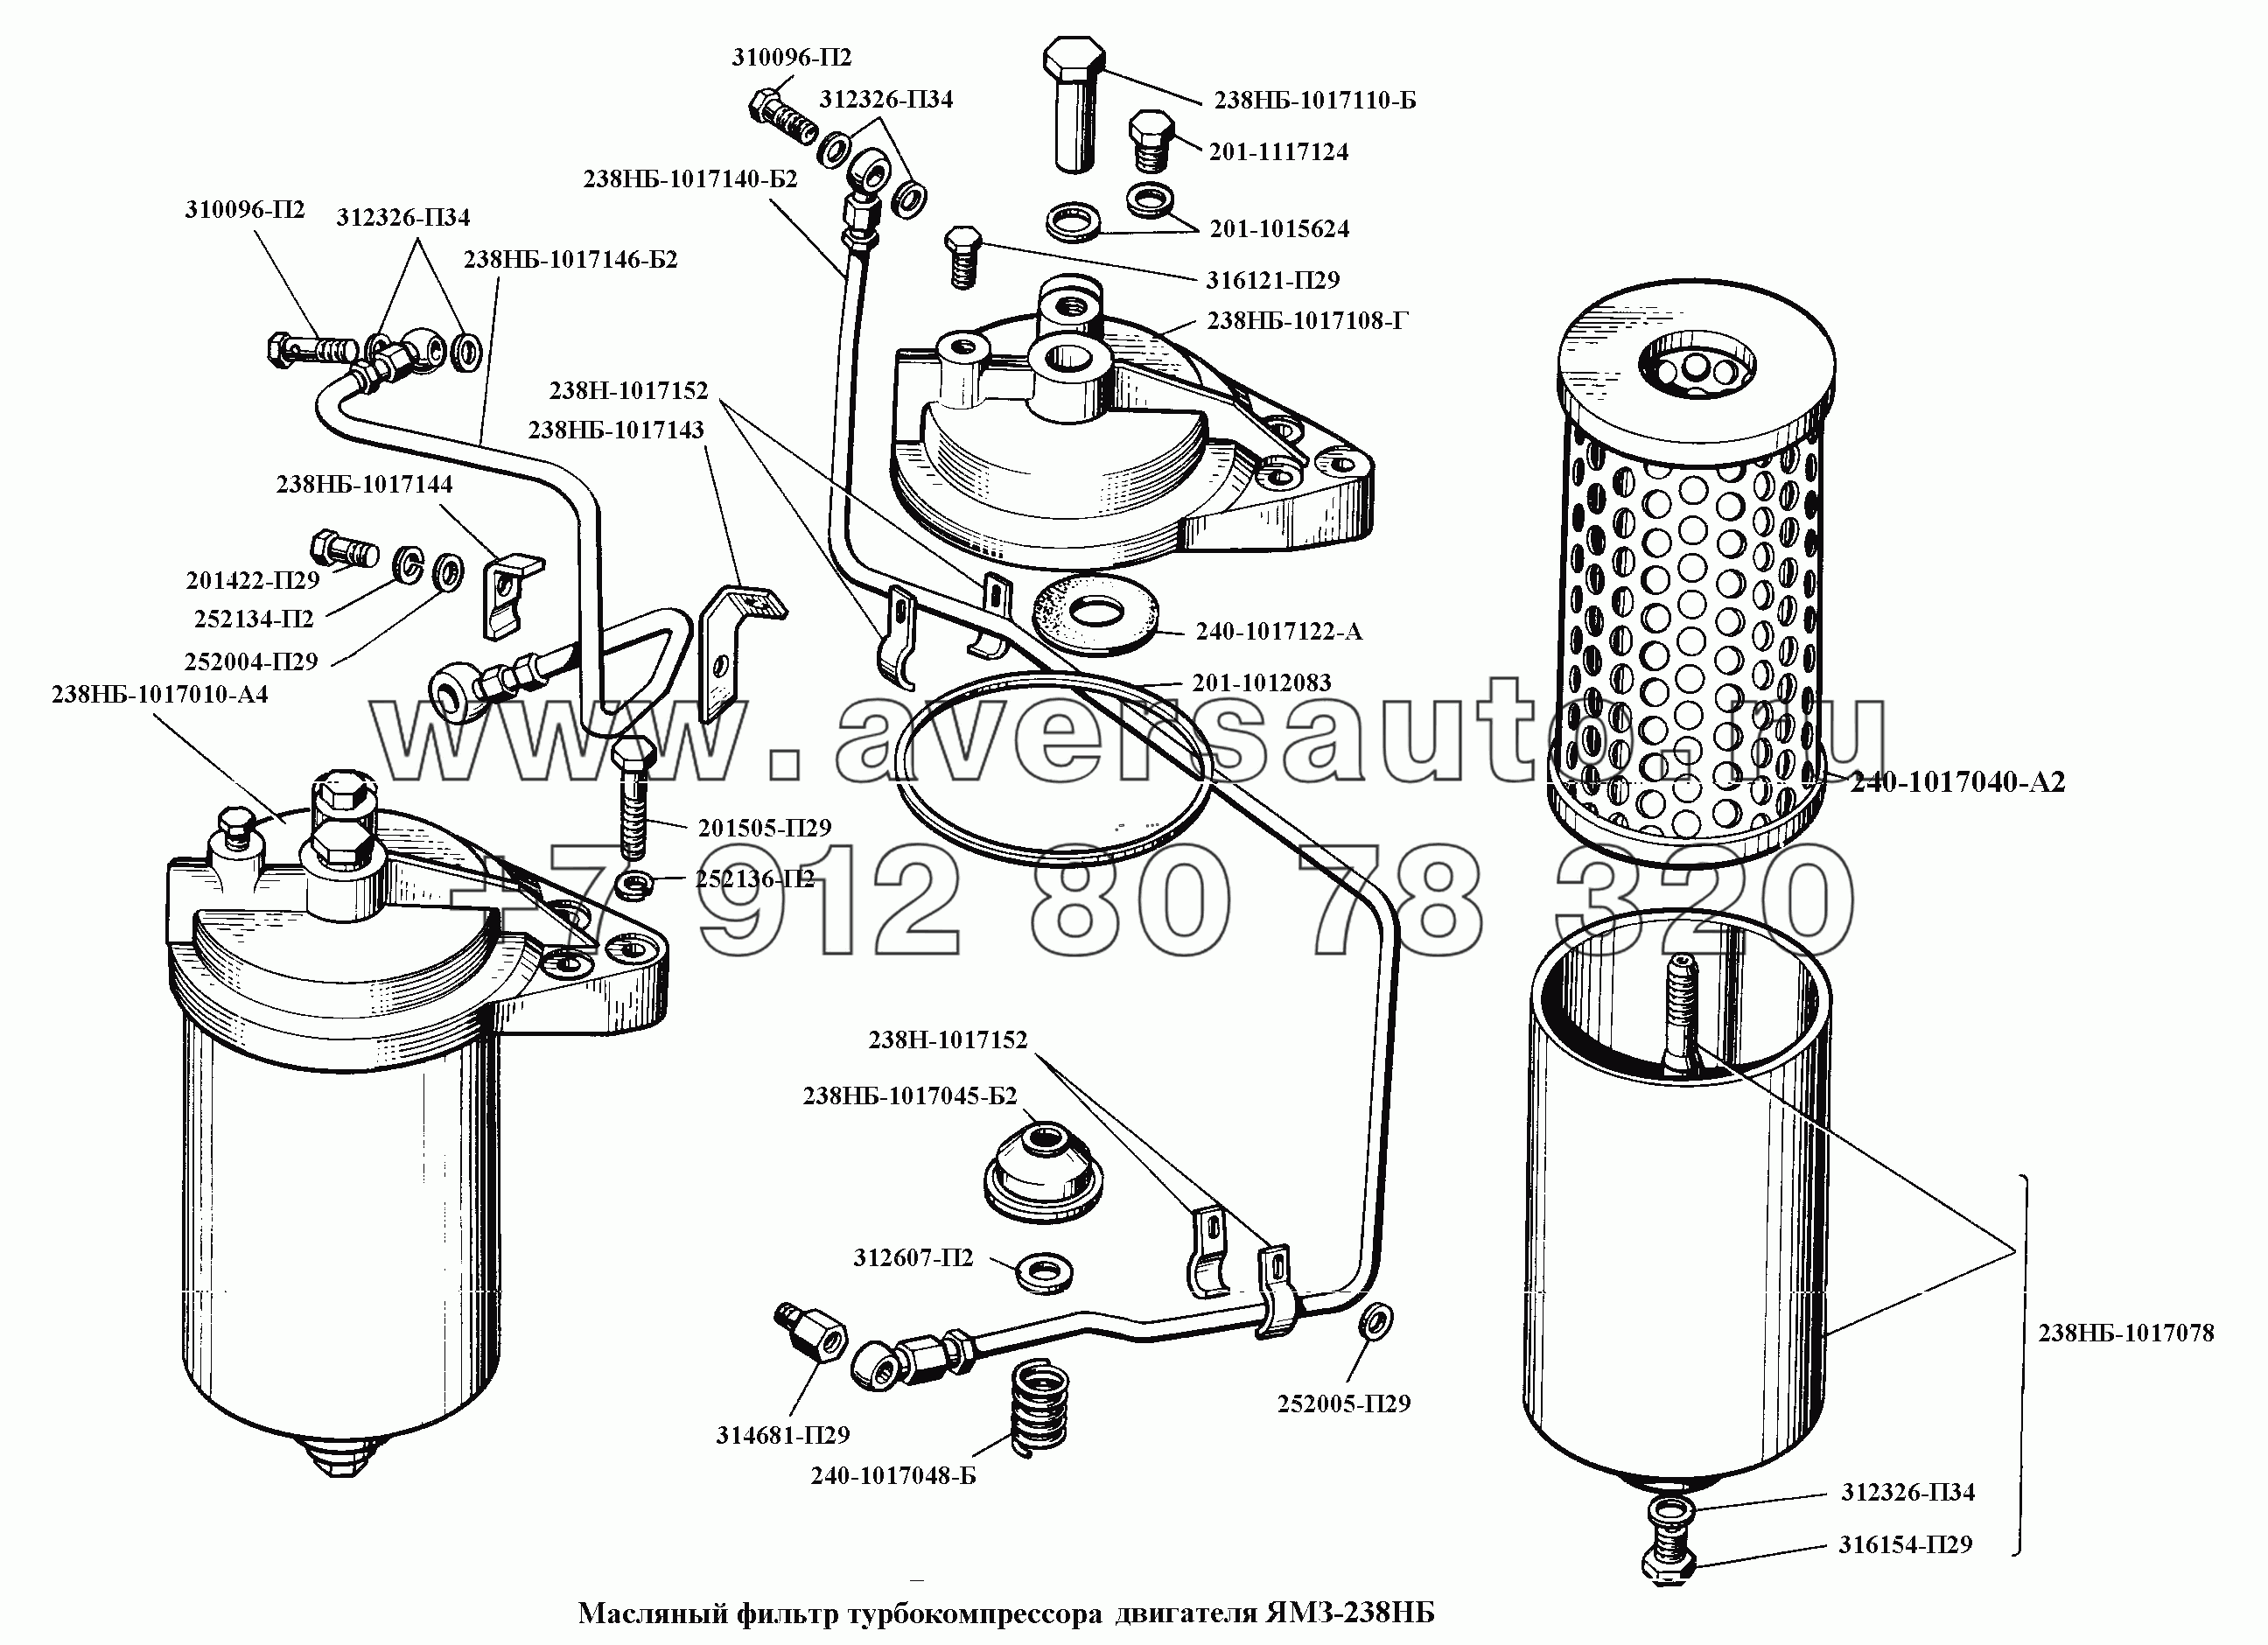 Масляный фильтр турбокомпрессора двигателя ЯМЗ-238НБ